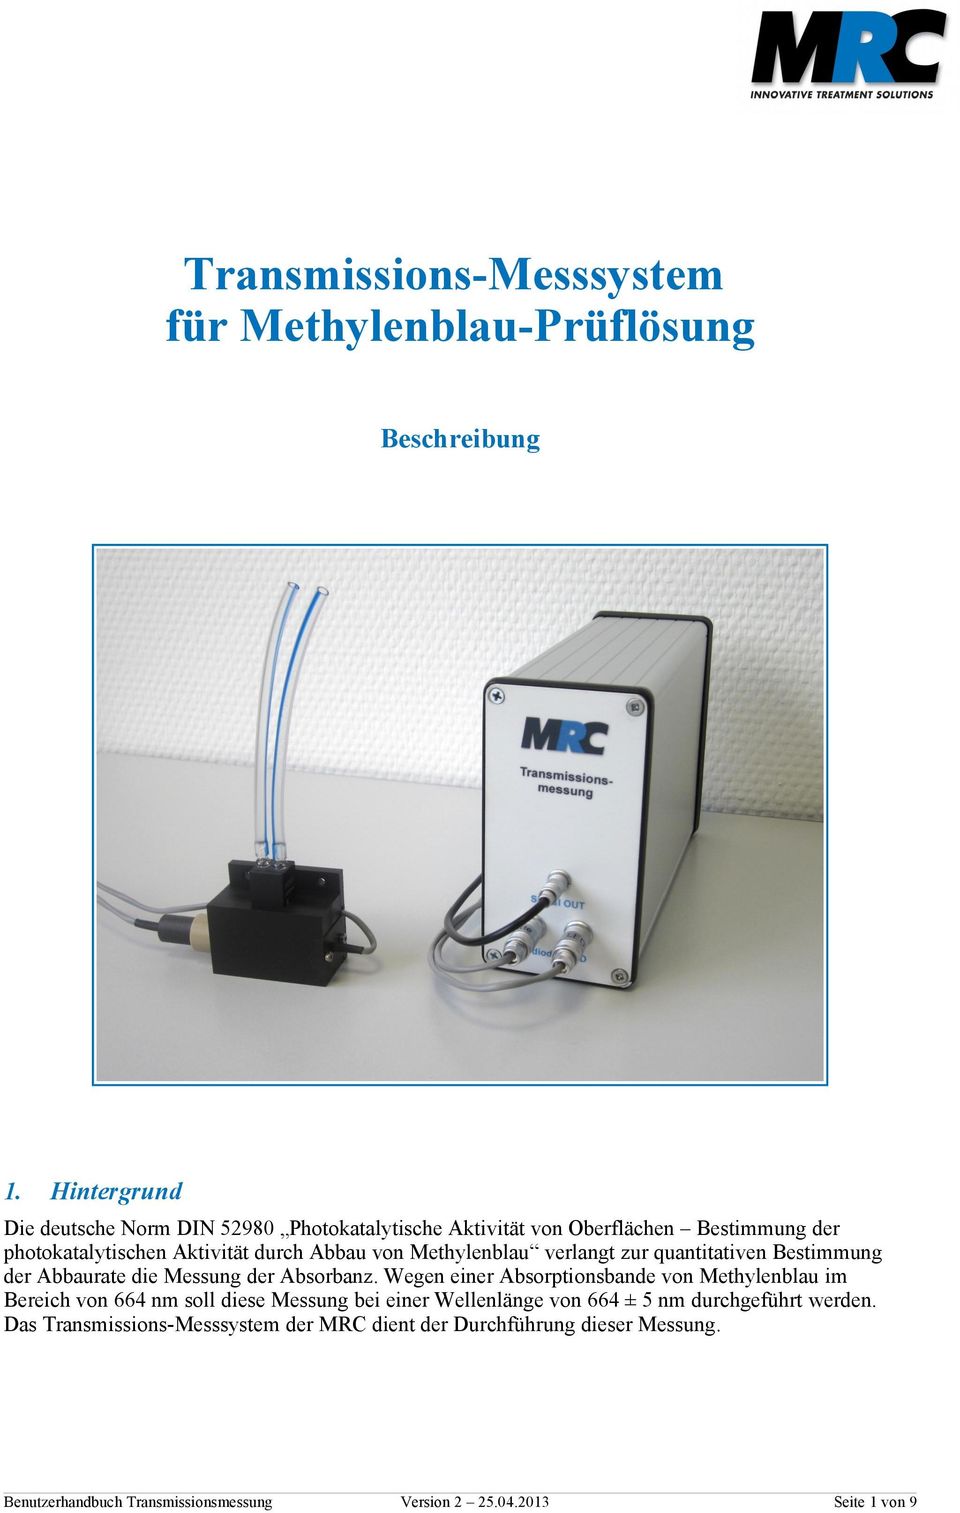 Methylenblau verlangt zur quantitativen Bestimmung der Abbaurate die Messung der Absorbanz.